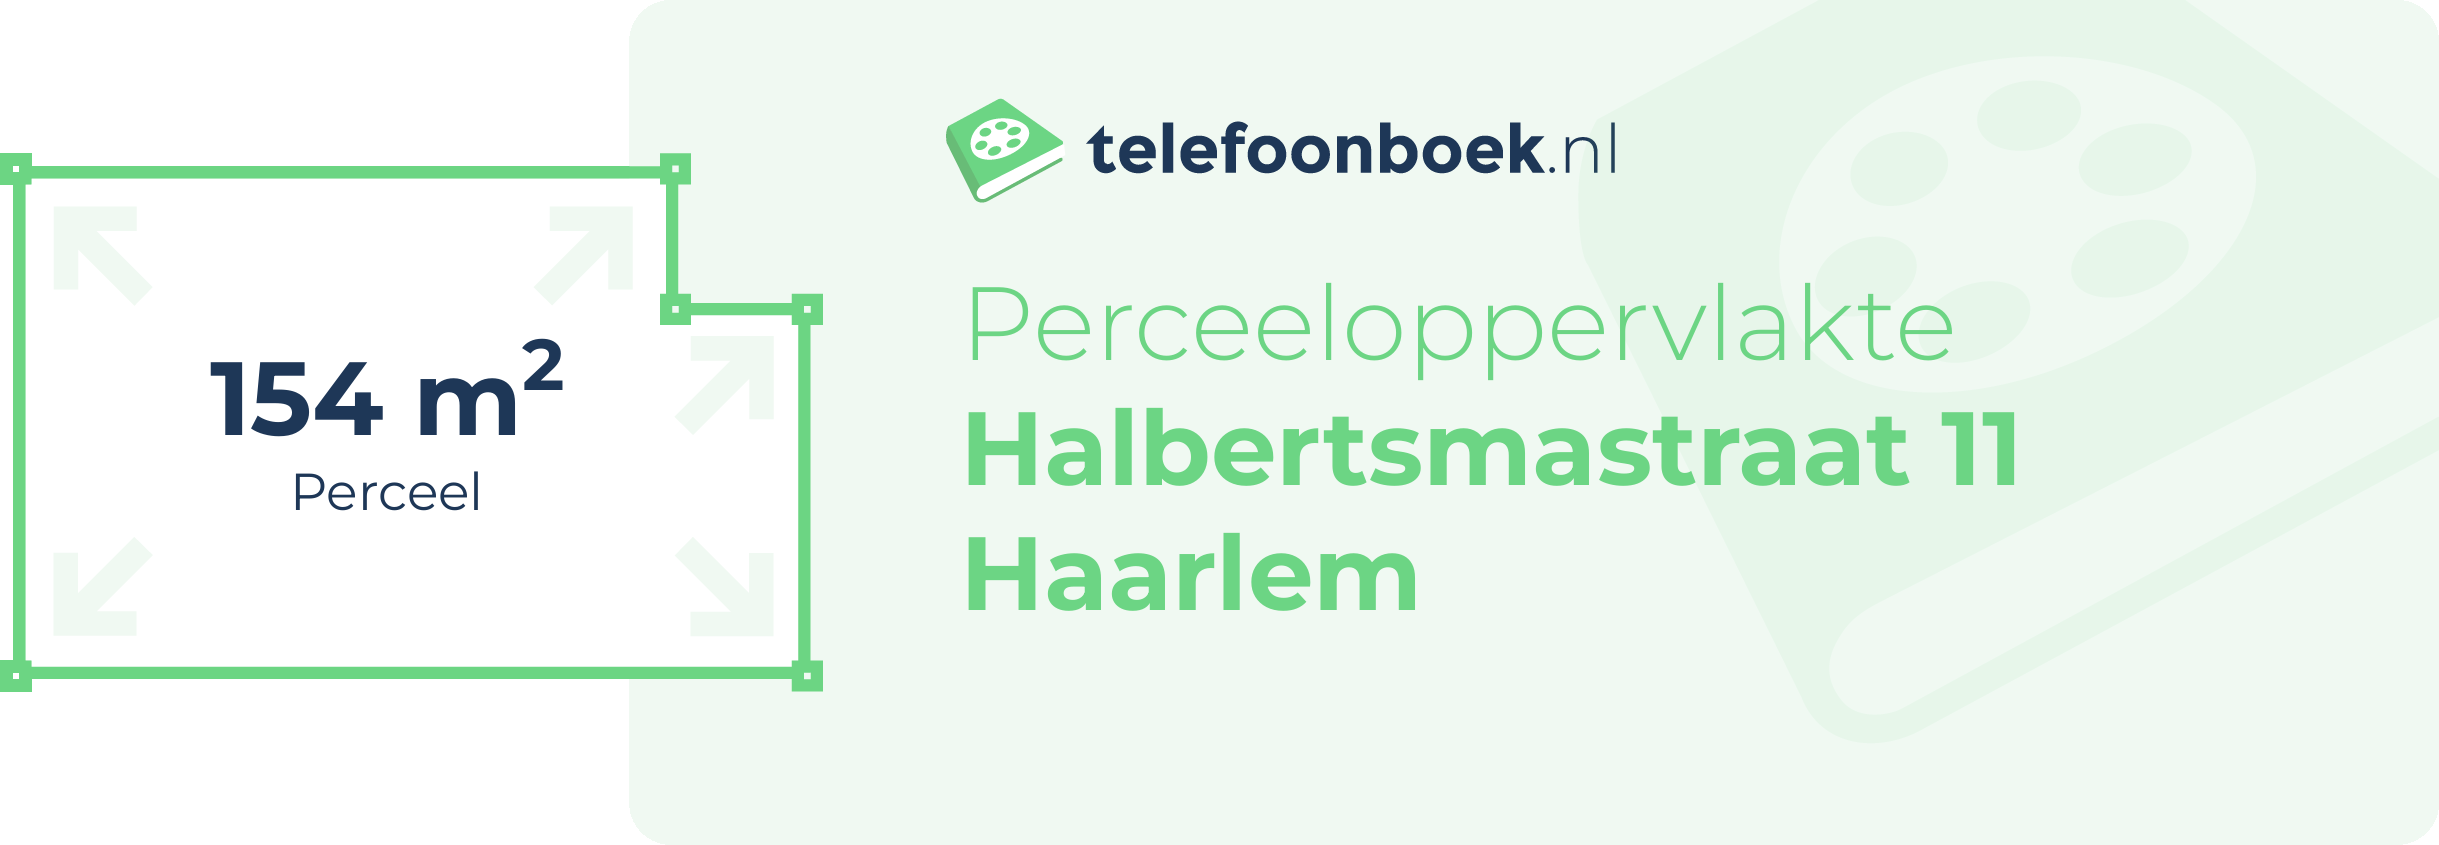 Perceeloppervlakte Halbertsmastraat 11 Haarlem